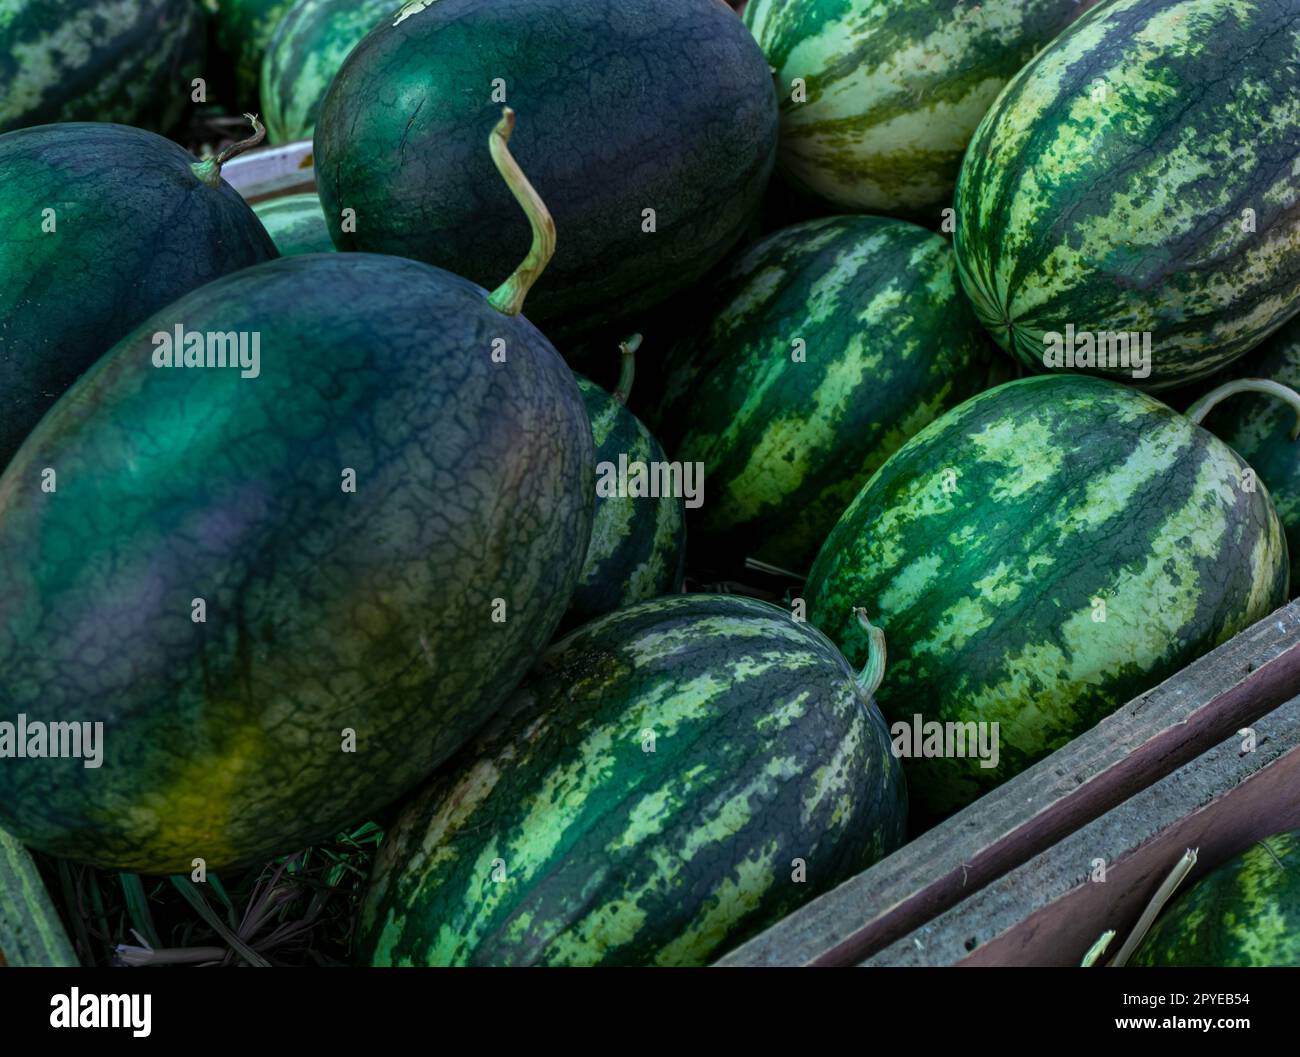 Großhaufen Wassermelonen mit grüner Schale auf dem Markt. Wassermelone aus einem Biobauernhof. Tropische saftige Fleischfrüchte. Gesundes Essen. Früchte des Sommers. Die süße, saftige rote oder rosa Frucht. Stockfoto